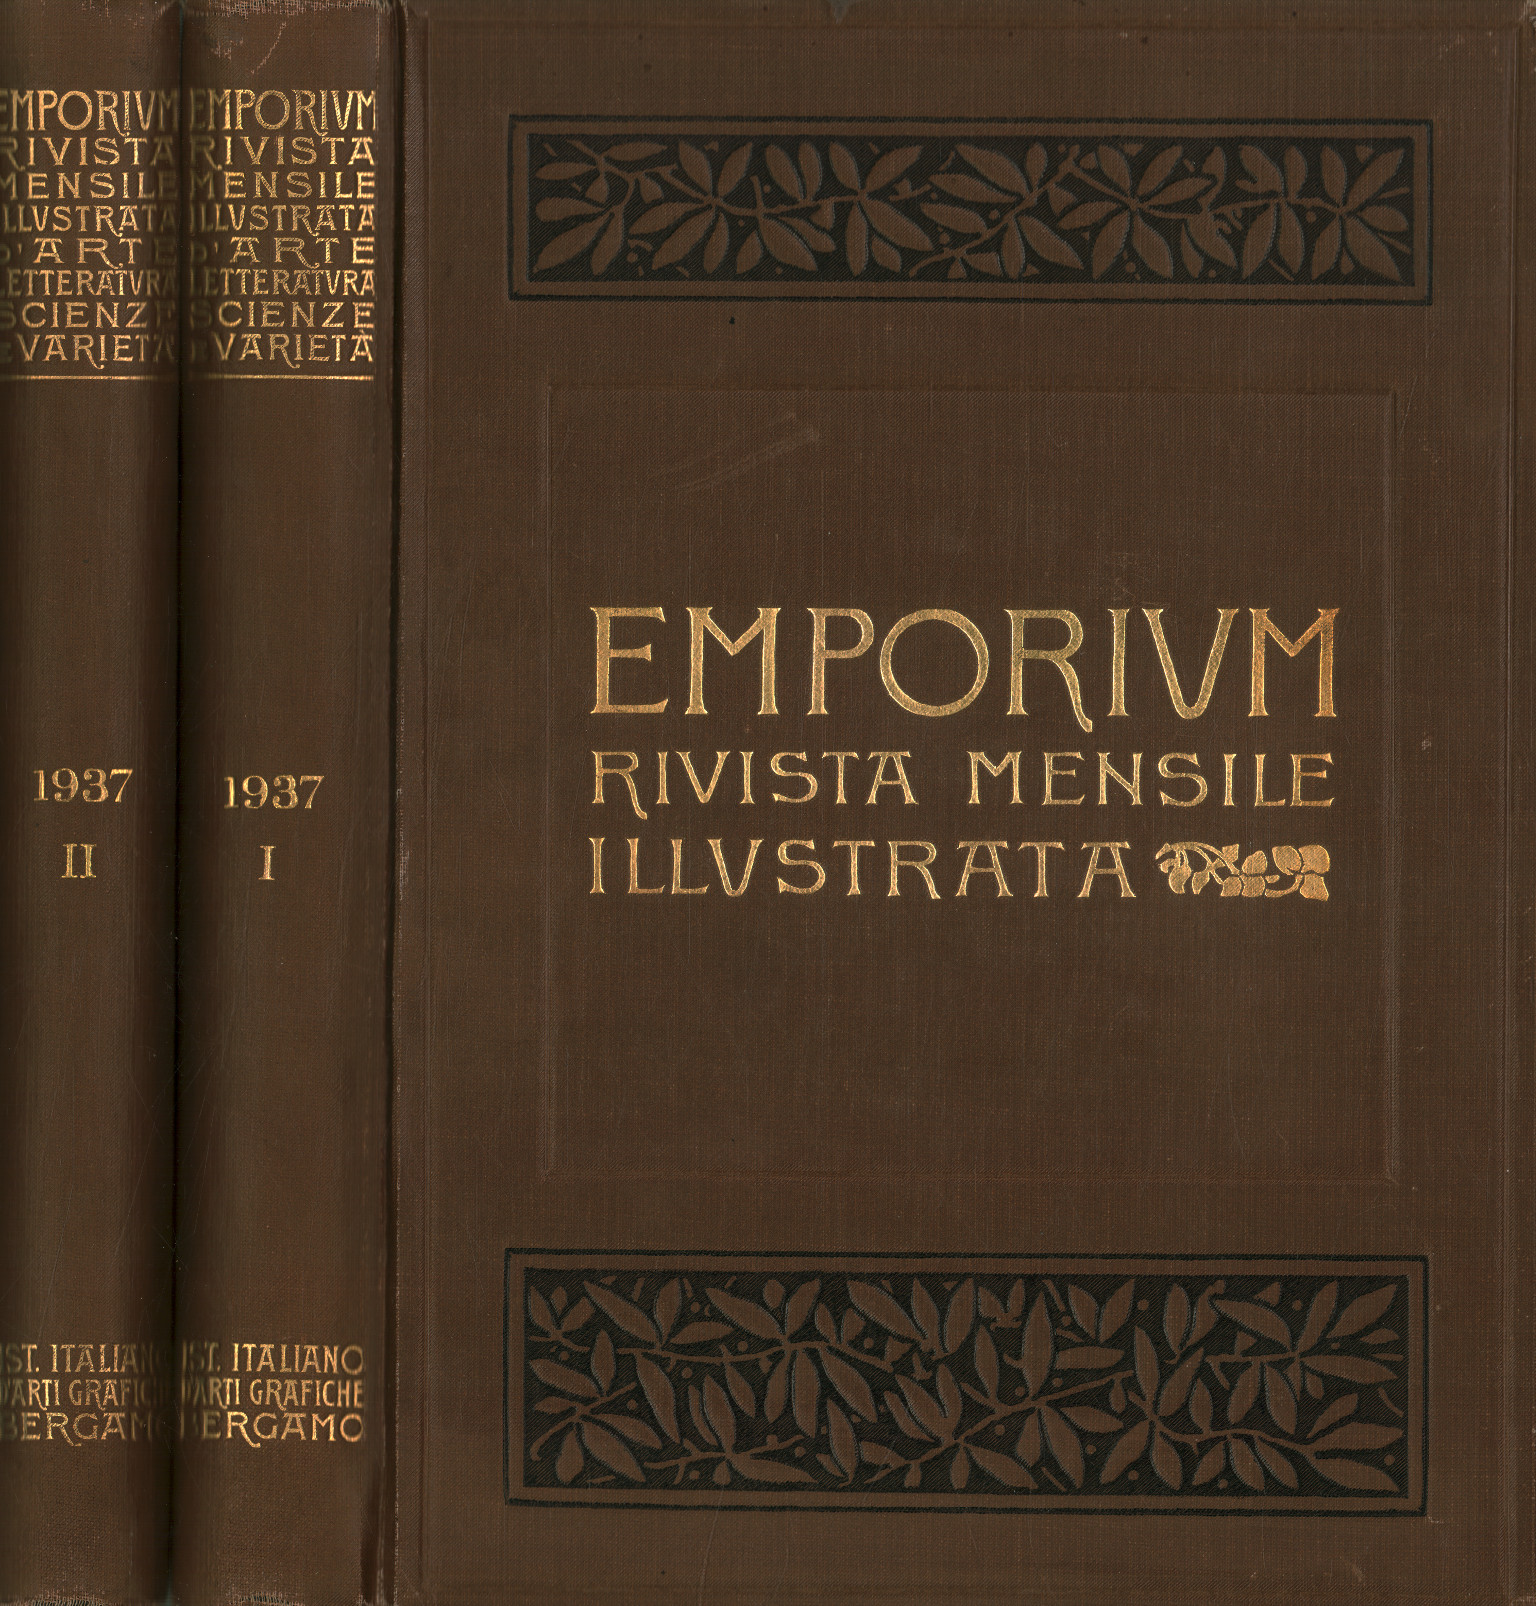 Emporium 1937 Vol LXXXXV-LXXXVI 2 volumes, Emporium. D0apo illustrated monthly magazine